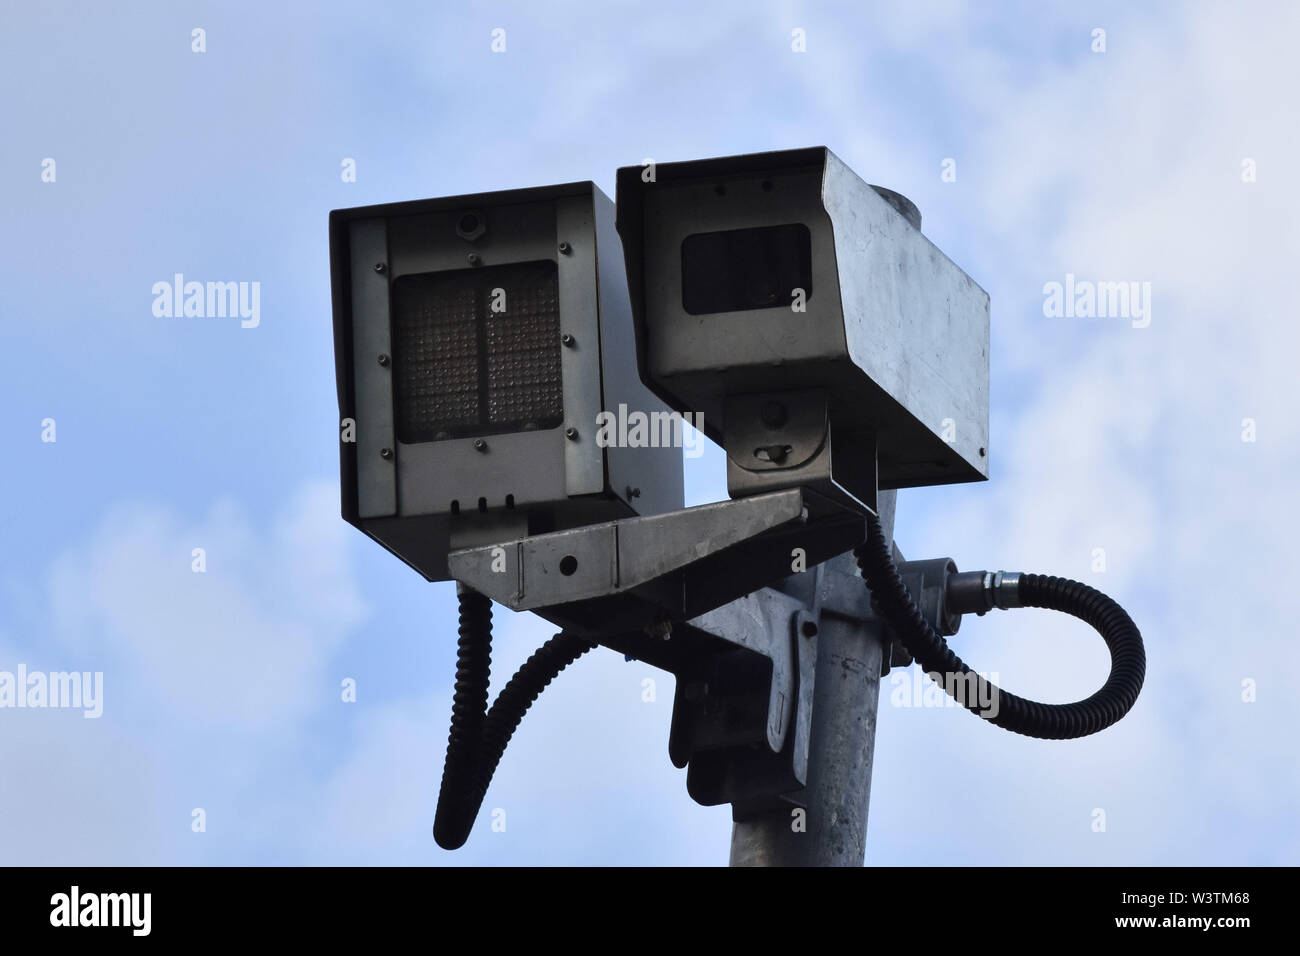 SÃO PAULO, SP - 17.07.2019: GOVERNO VAI INSPECCIONAR RADARES - Regierung wird installieren Sie tausend Radare auf Bundesstraßen, Betrag ist Teil nach MPF zu reduzieren Punkte überwacht. Im Foto Radar in der nördlich von São Paulo, an diesem Mittwoch (17.). (Foto: Roberto Casimiro/Fotoarena) Stockfoto